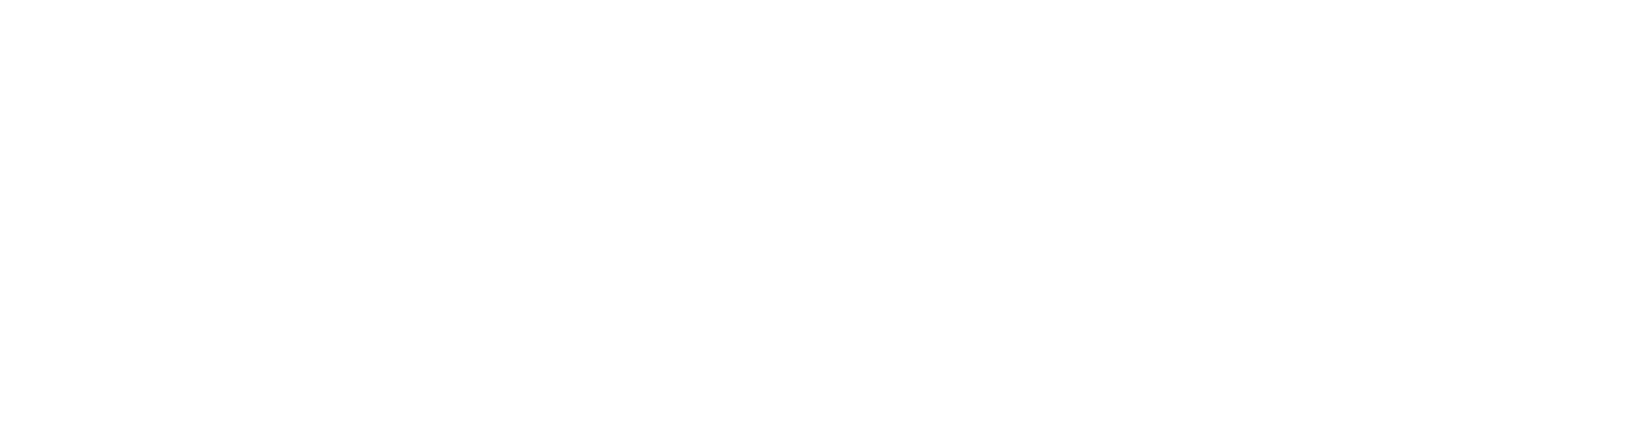 COLOPL logo large for dark backgrounds (transparent PNG)